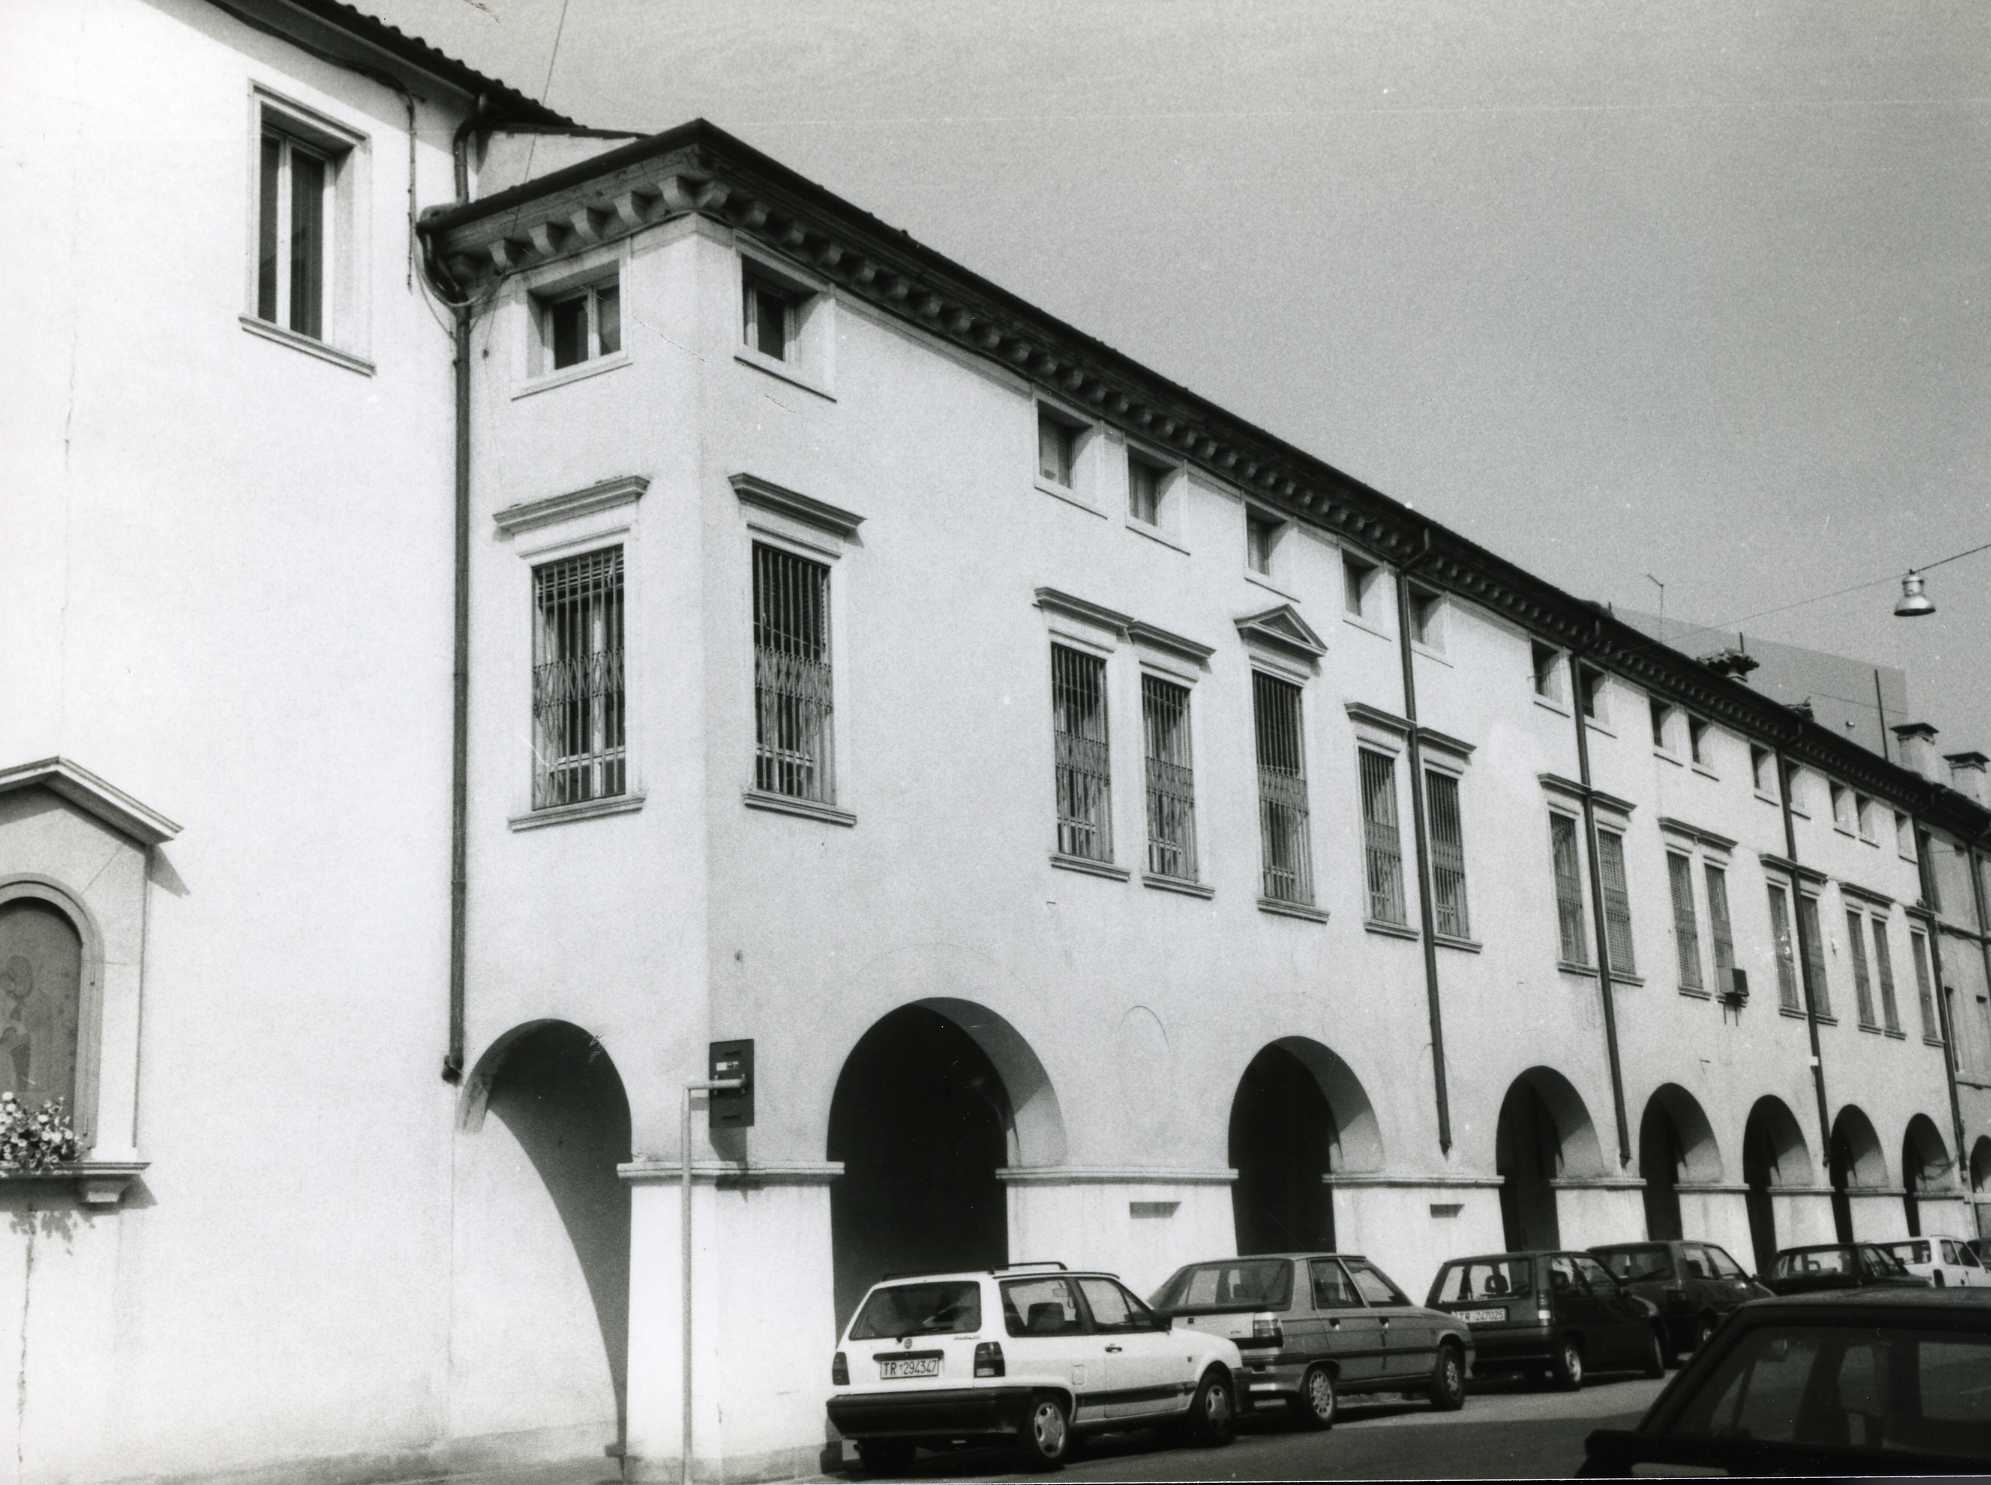 Ex convento delle dimesse (palazzo, convento) - Vicenza (VI)  (XVII, metà)